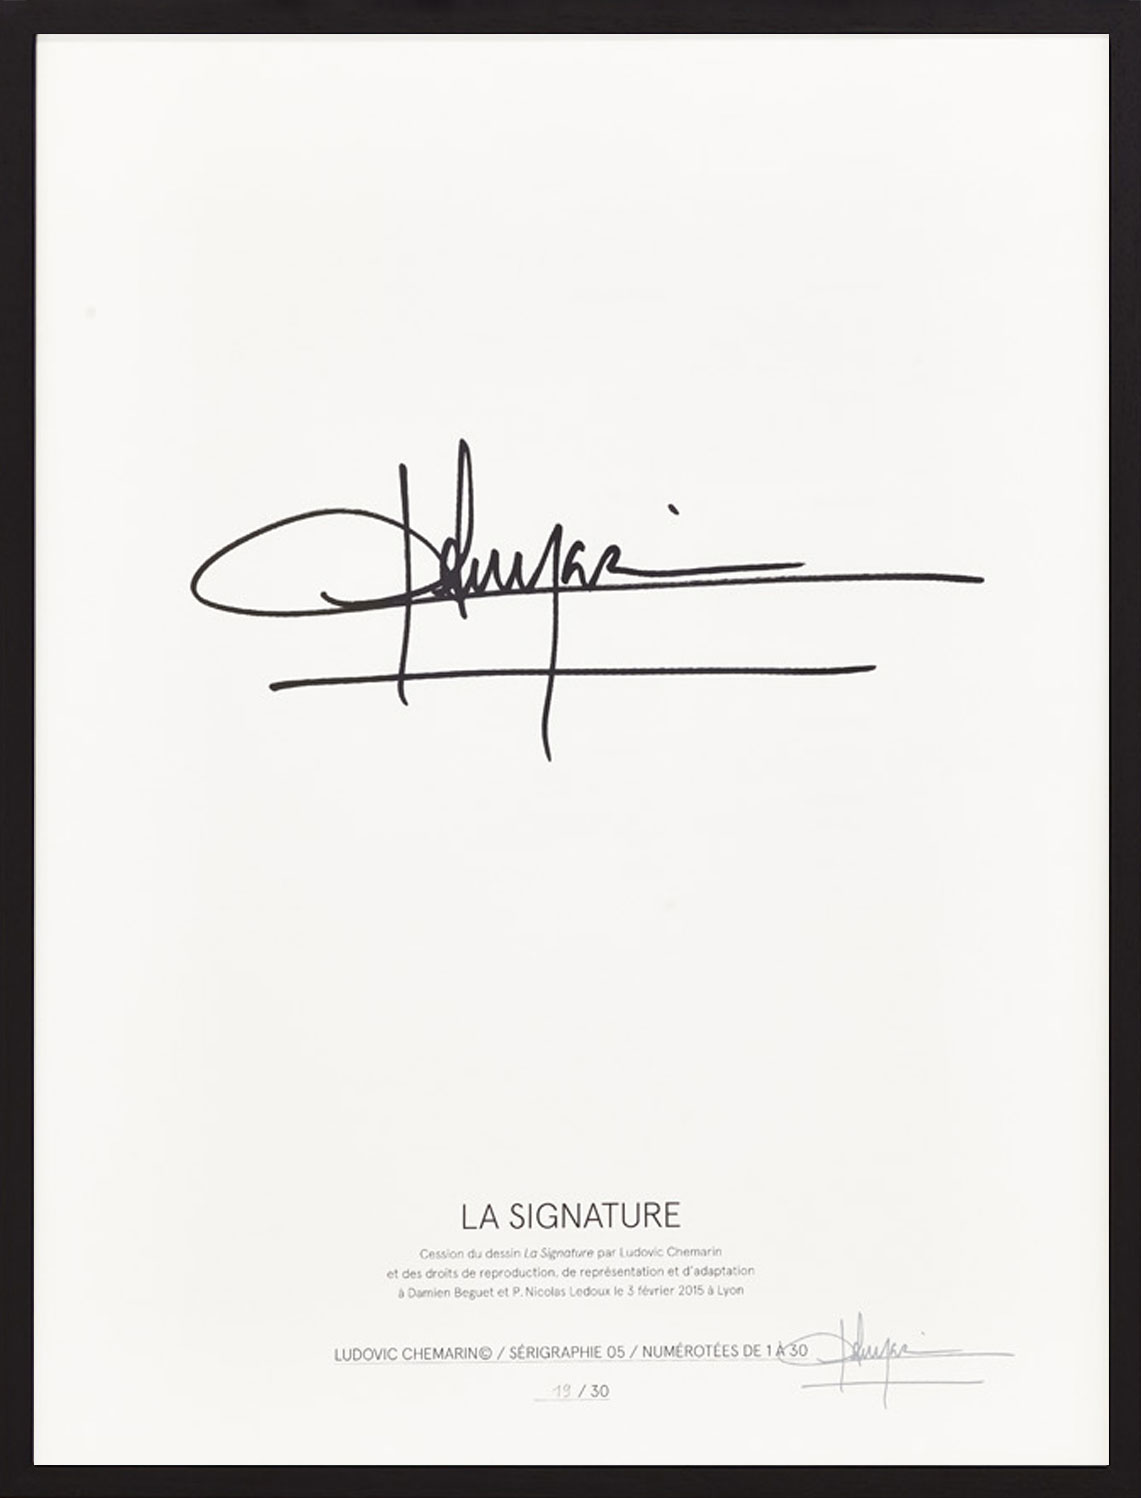 Ludovic Chemarin© - La signature, 2015